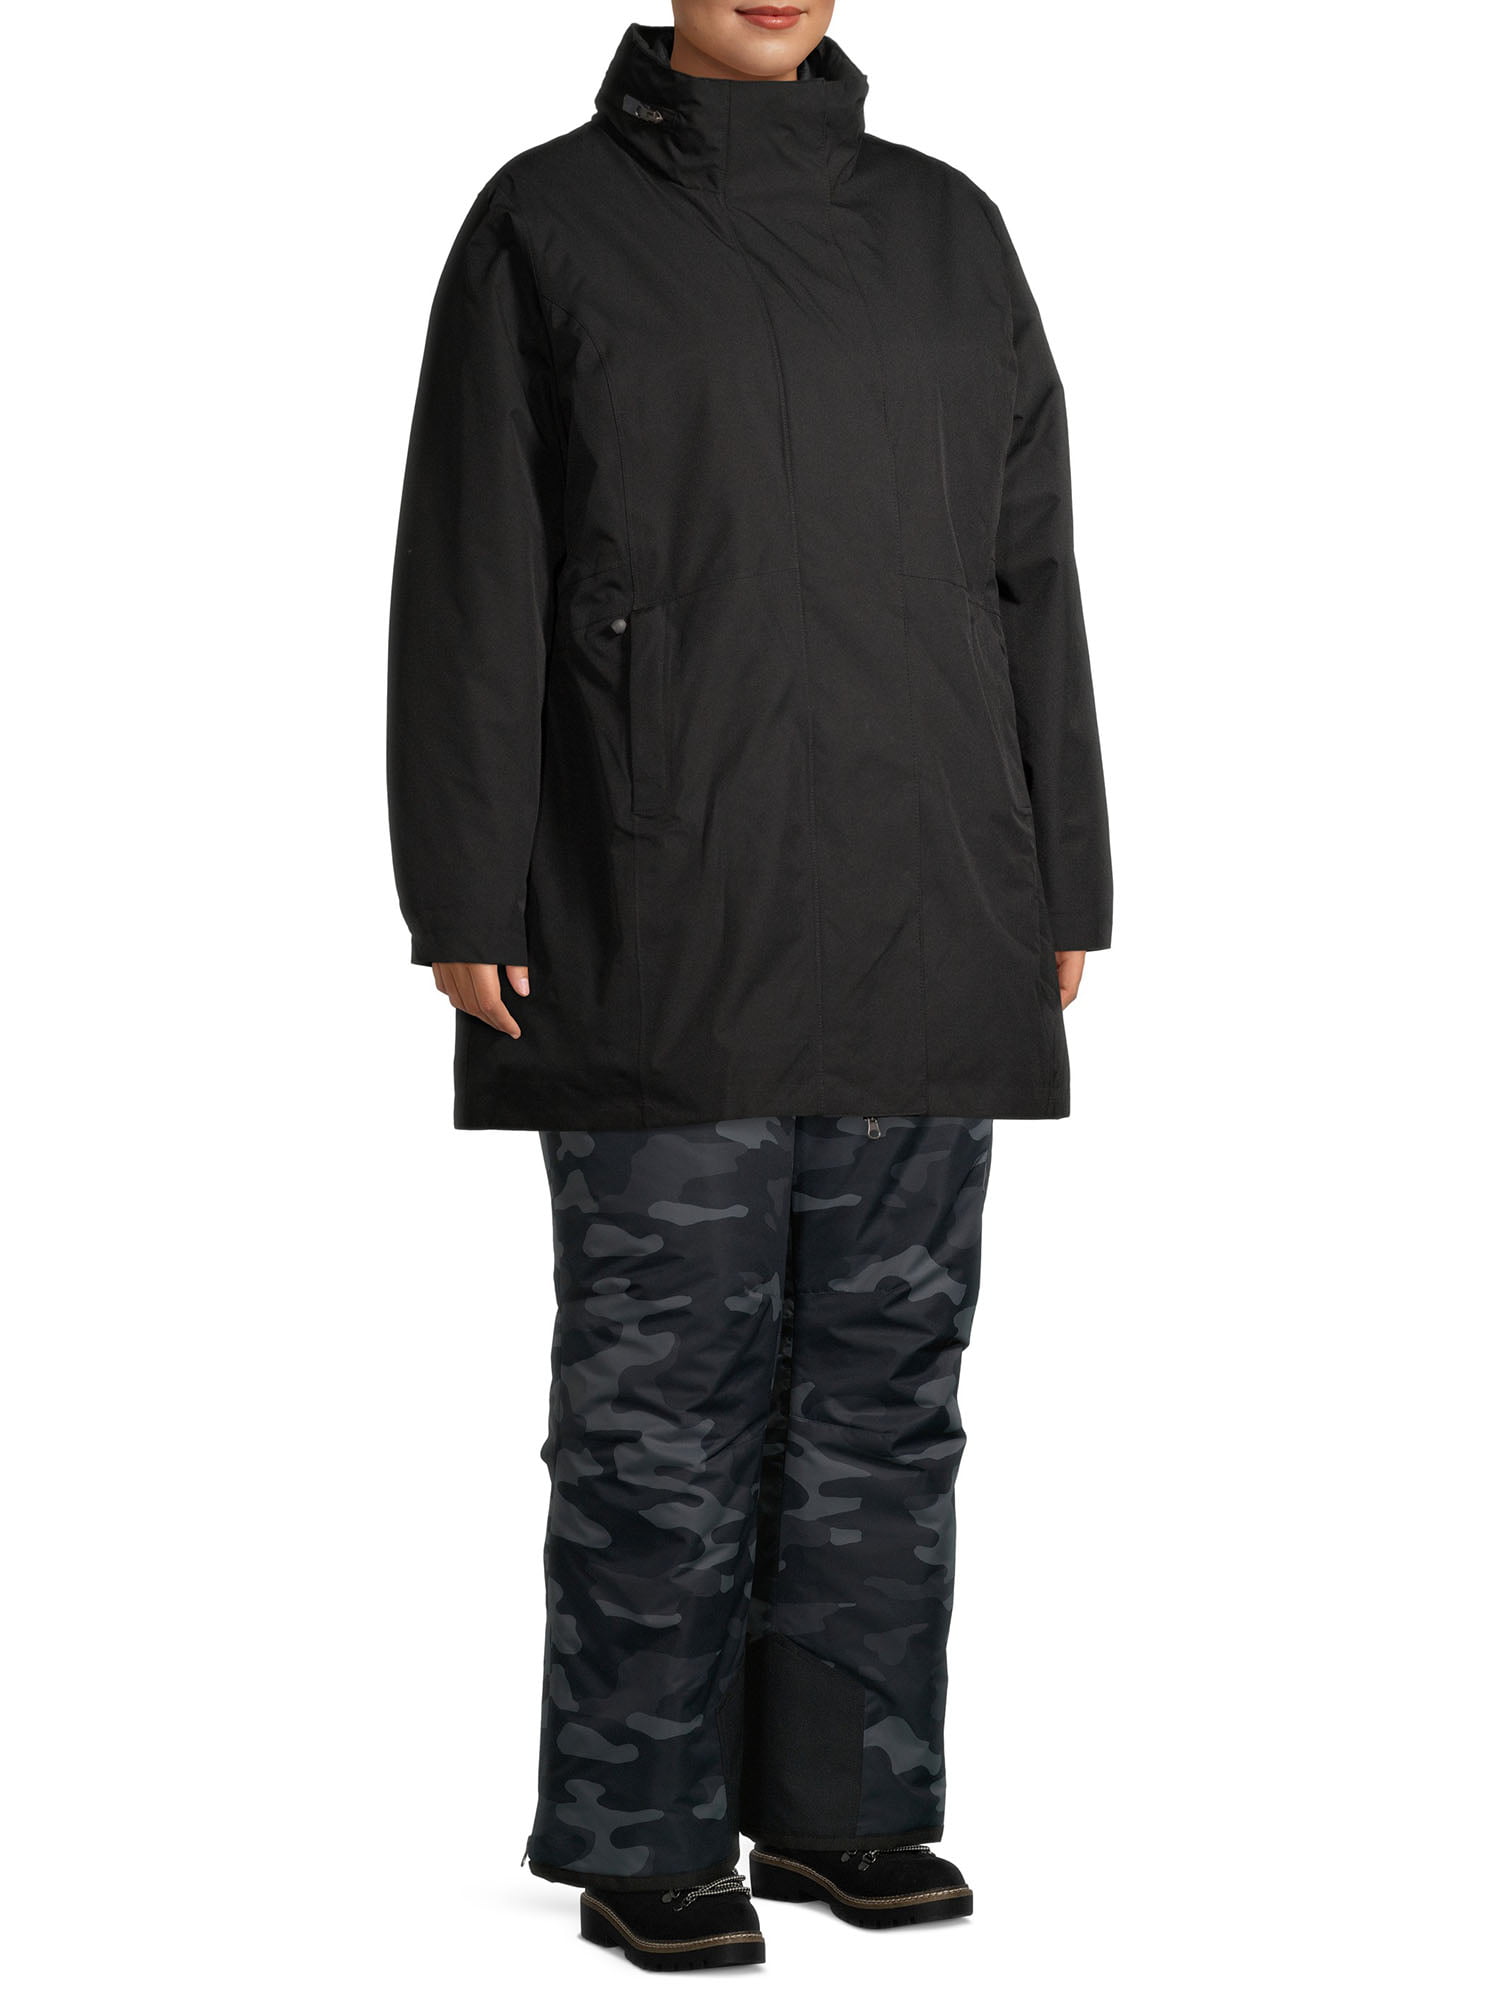 Swiss Tech Women's Waterproof Long 3-in-1 Systems Jacket